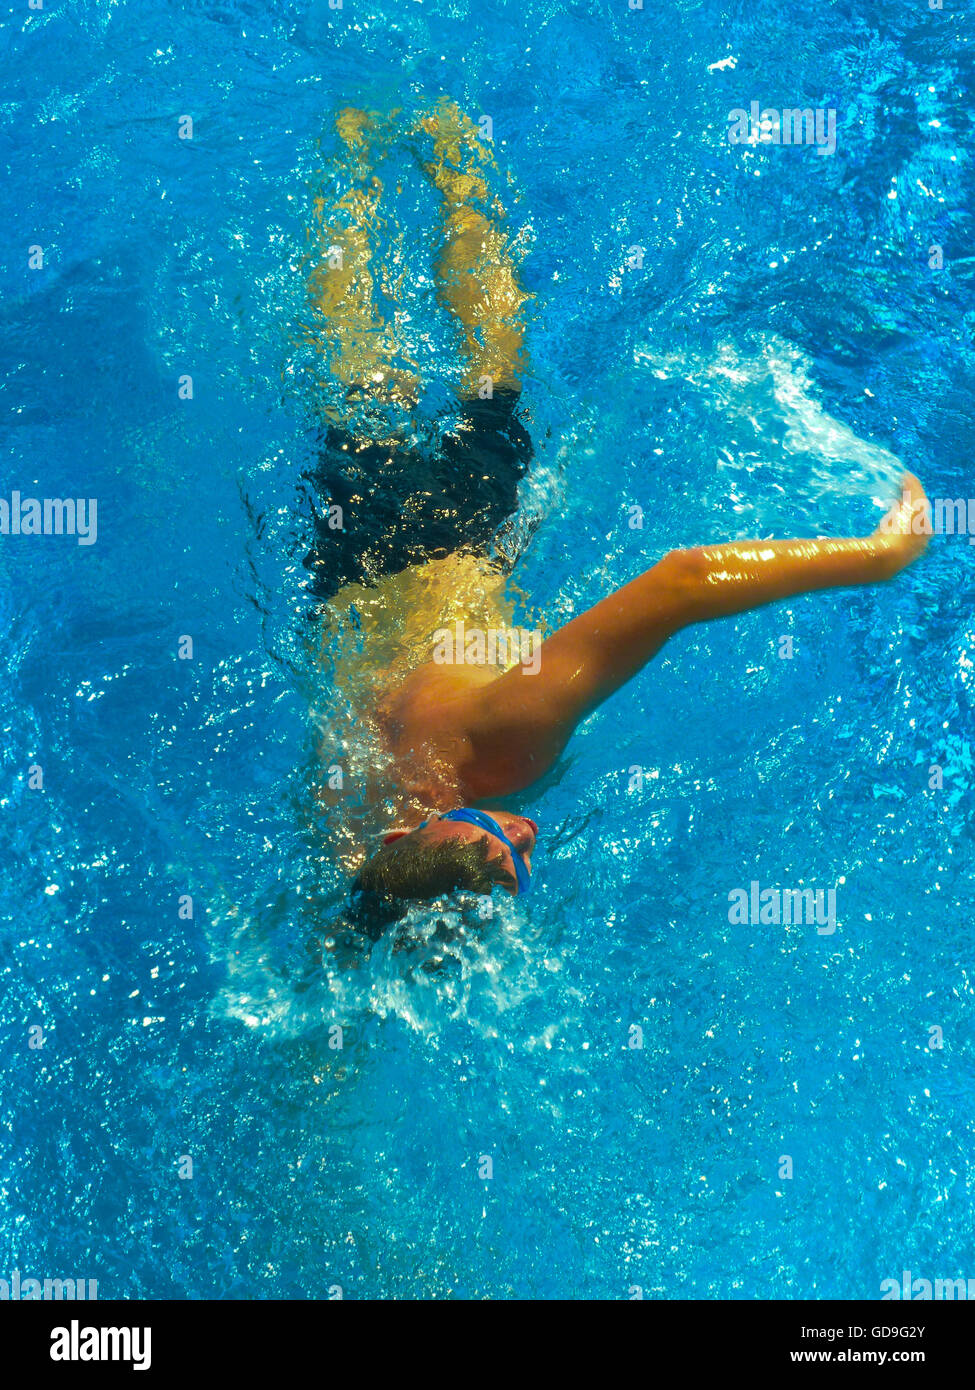 male swimming in pool Australian Crawl Stock Photo - Alamy